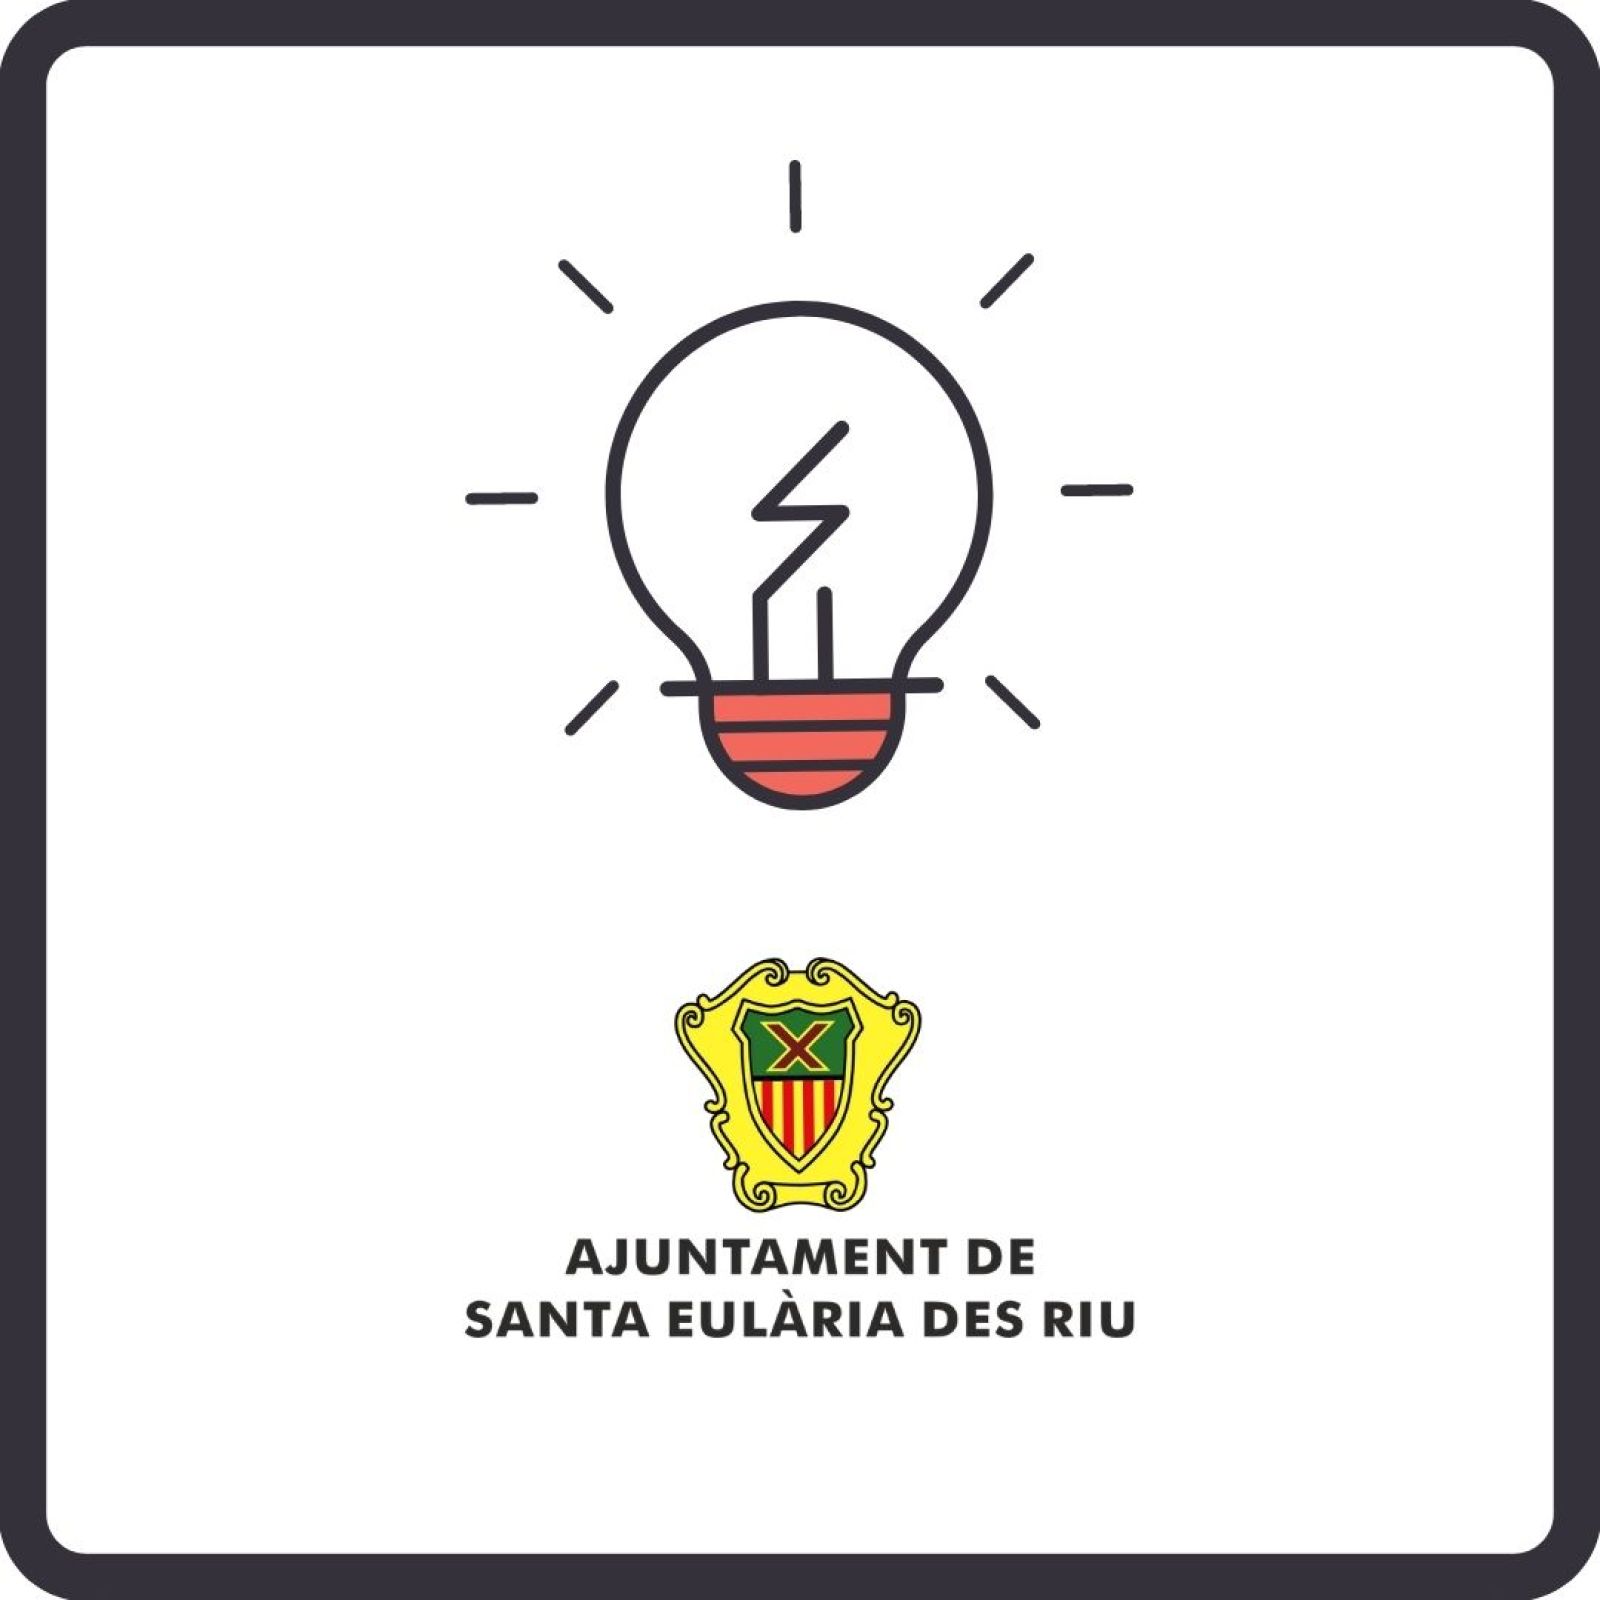 Corte temporal del suministro de energía eléctrica en diferentes zonas de Santa Eulària des Riu los días 16, 17 y 18 de noviembre.